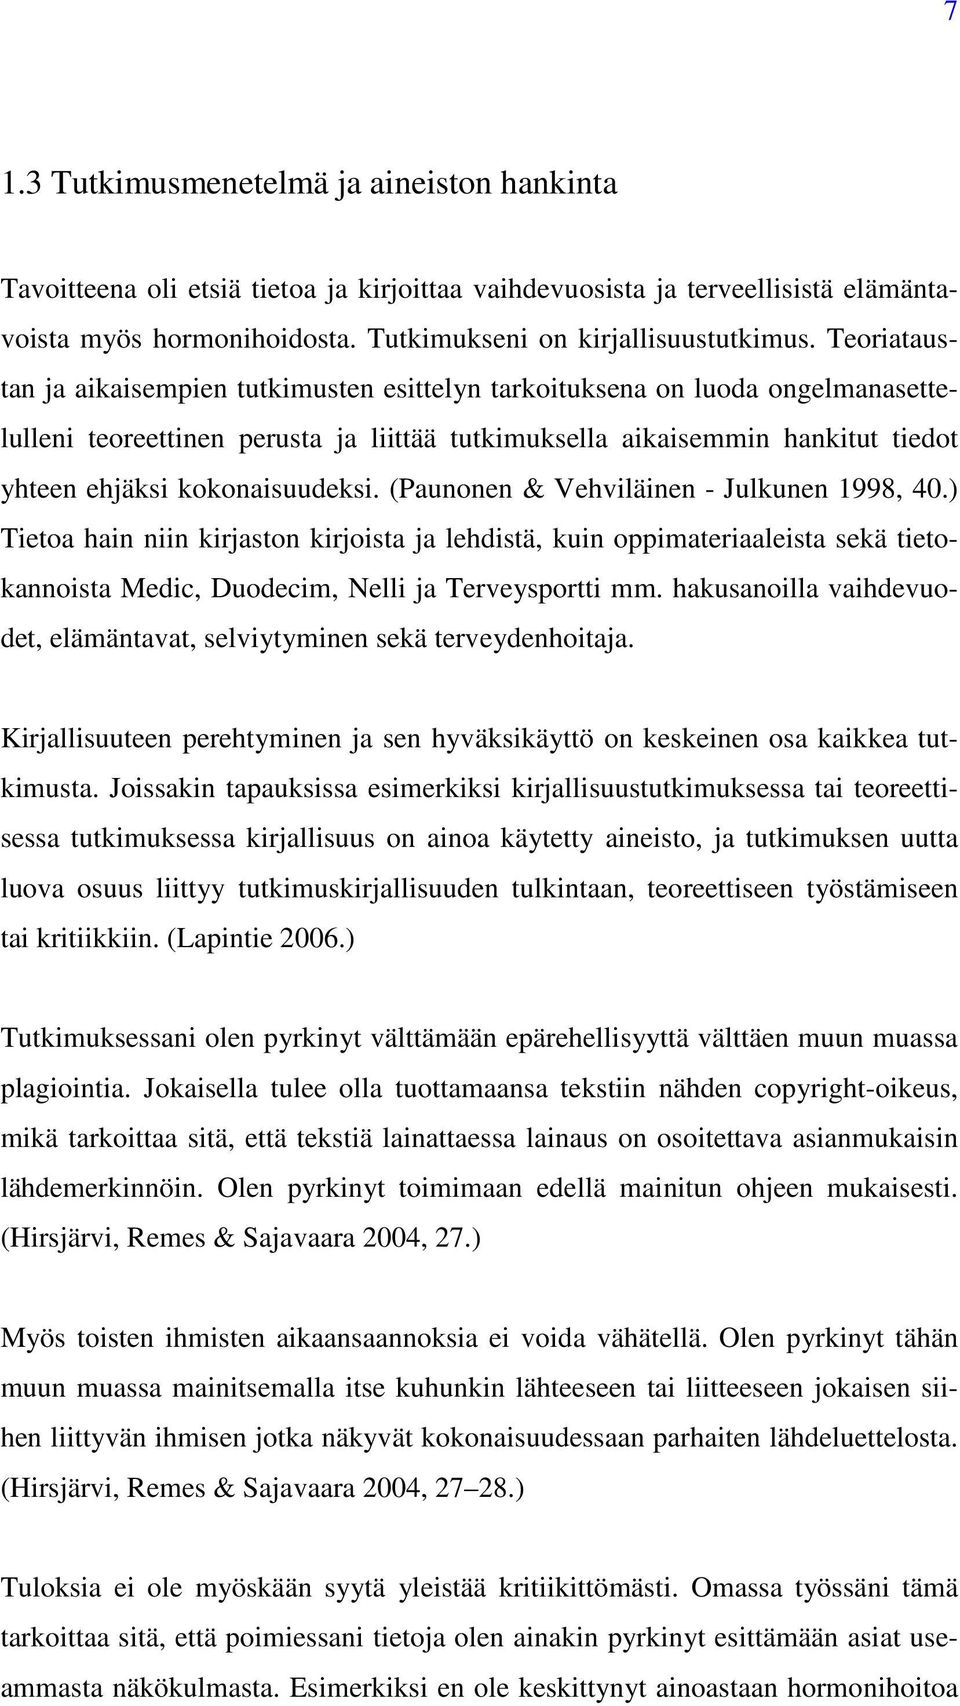 kokonaisuudeksi. (Paunonen & Vehviläinen - Julkunen 1998, 40.) Tietoa hain niin kirjaston kirjoista ja lehdistä, kuin oppimateriaaleista sekä tietokannoista Medic, Duodecim, Nelli ja Terveysportti mm.